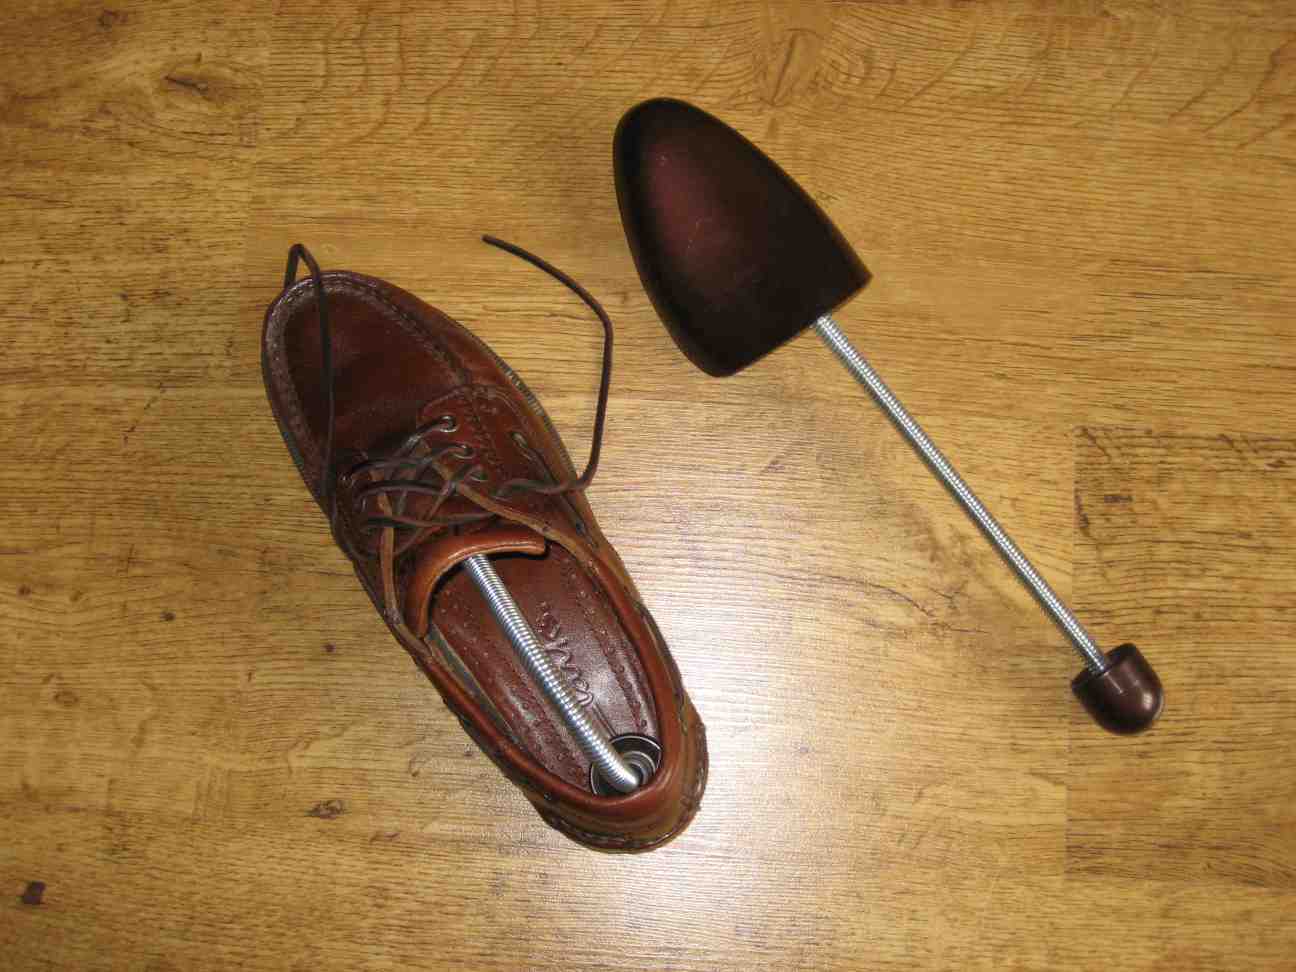 Chữa mũi giày bị gãy bằng dụng cụ làm giãn giày